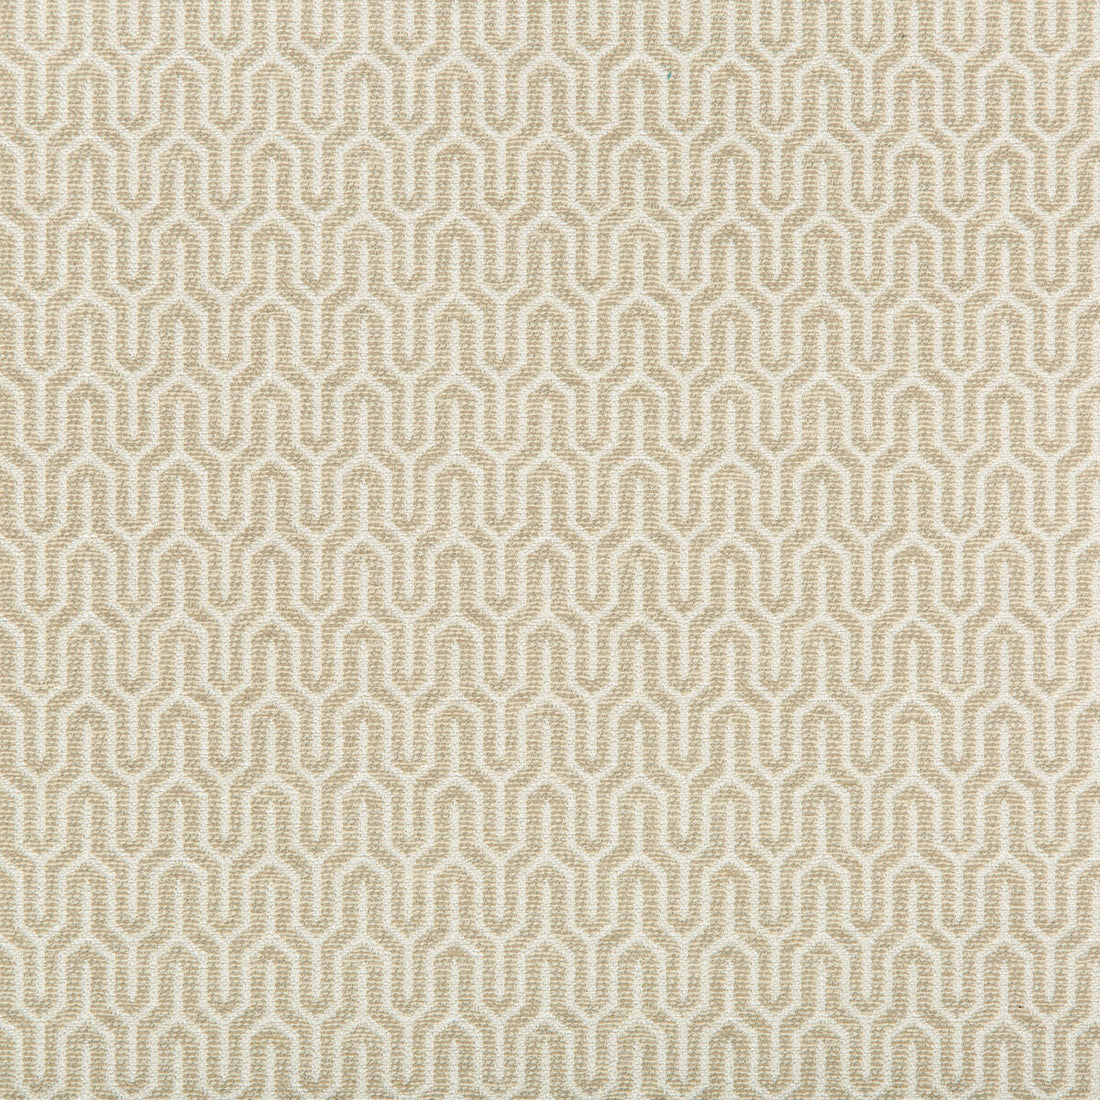 Kravet Design fabric in 35637-16 color - pattern 35637.16.0 - by Kravet Design